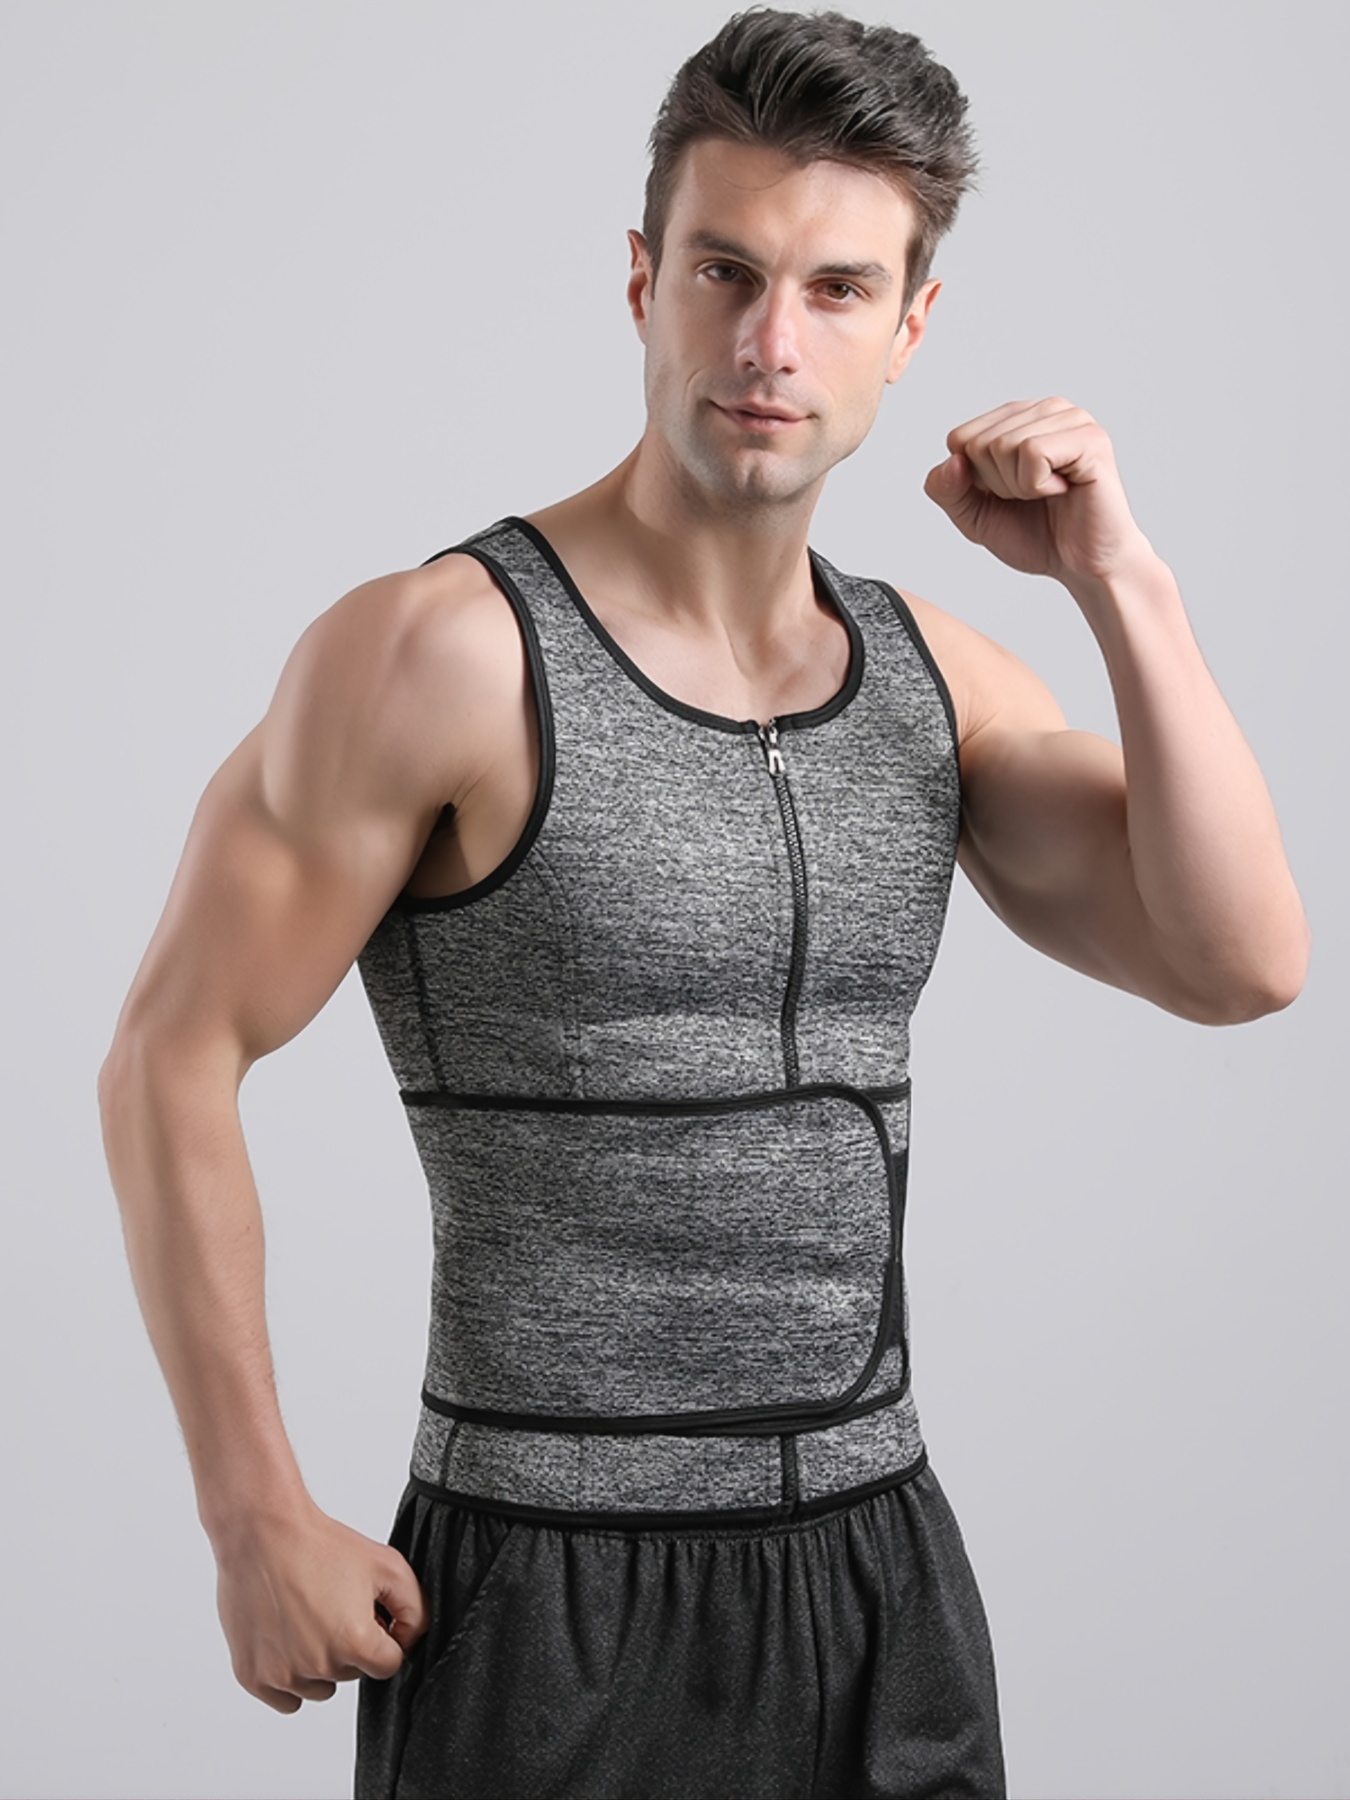 ZOUYUE Mens Sweat Sauna Vest for Waist Trainer, Sweat Sauna Suit Zipper  Neoprene Workout Vest for Men